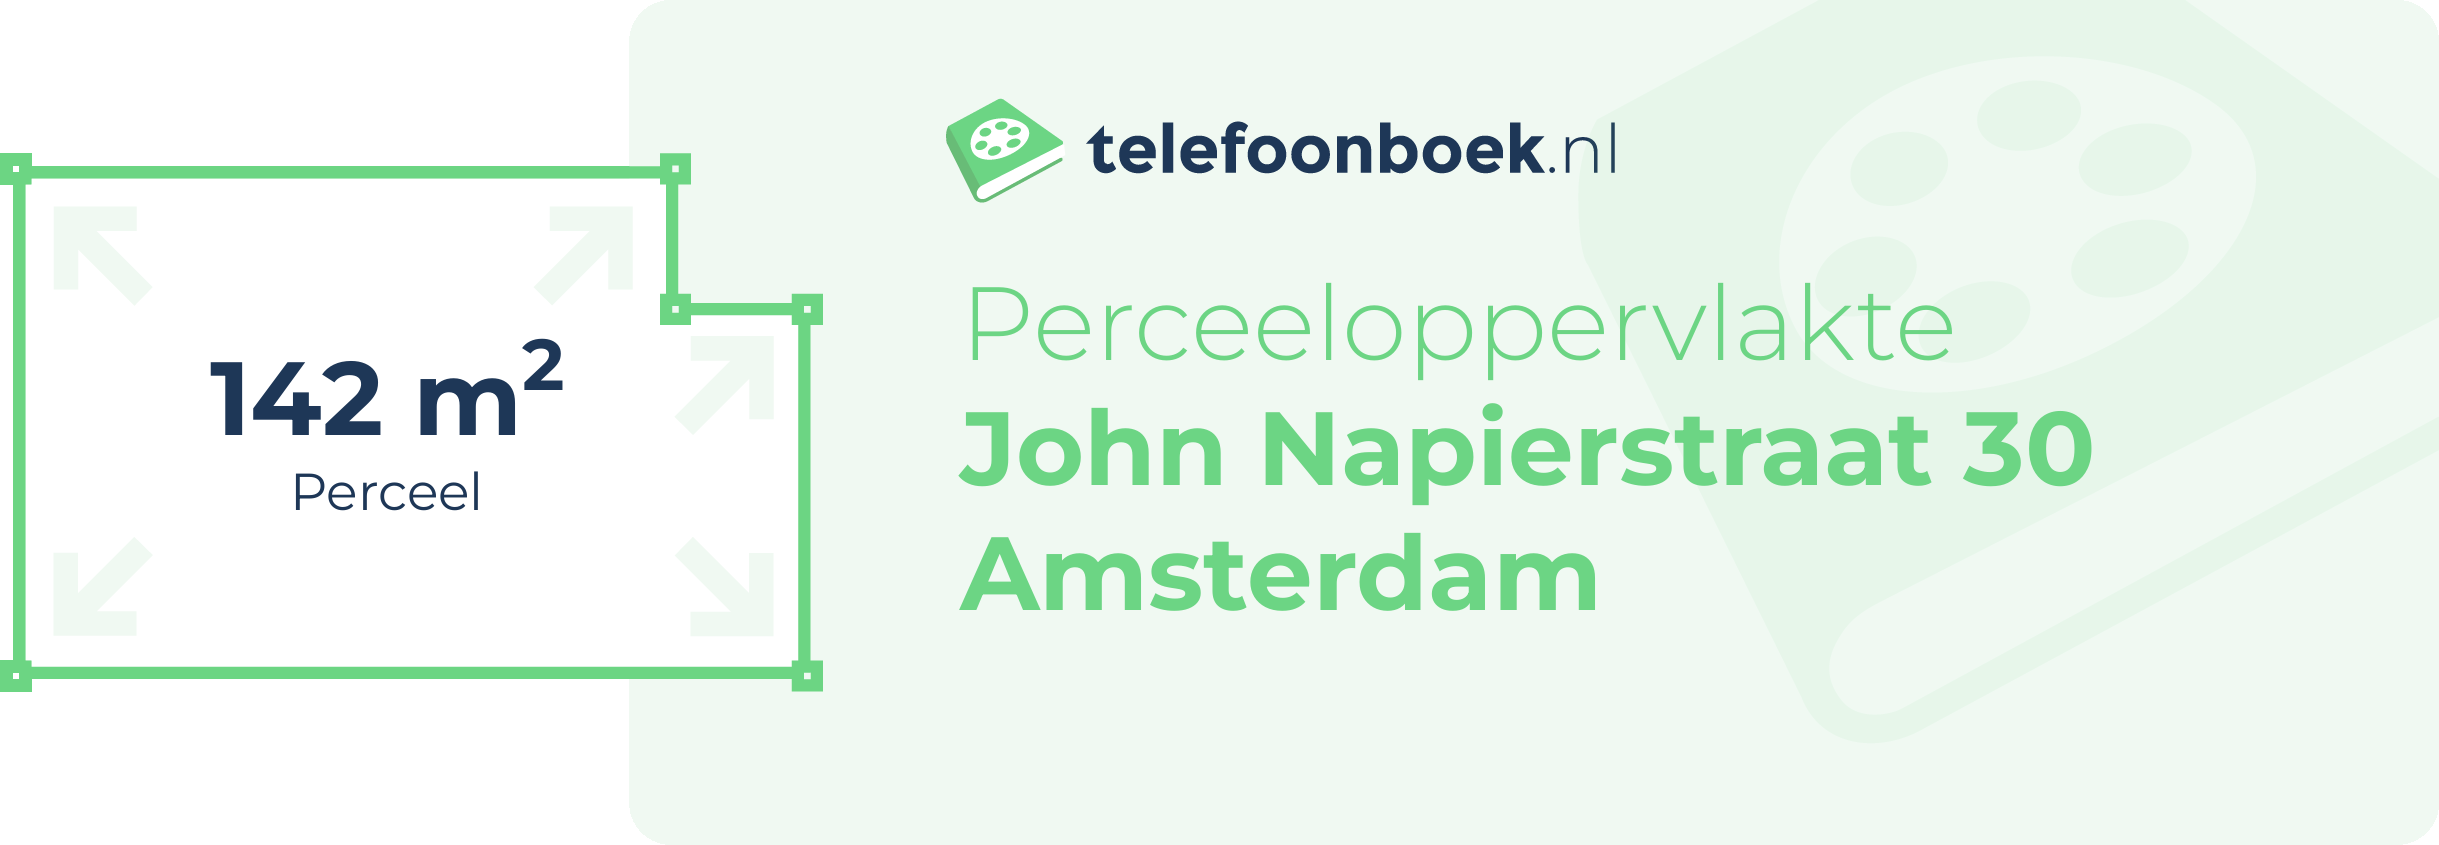 Perceeloppervlakte John Napierstraat 30 Amsterdam